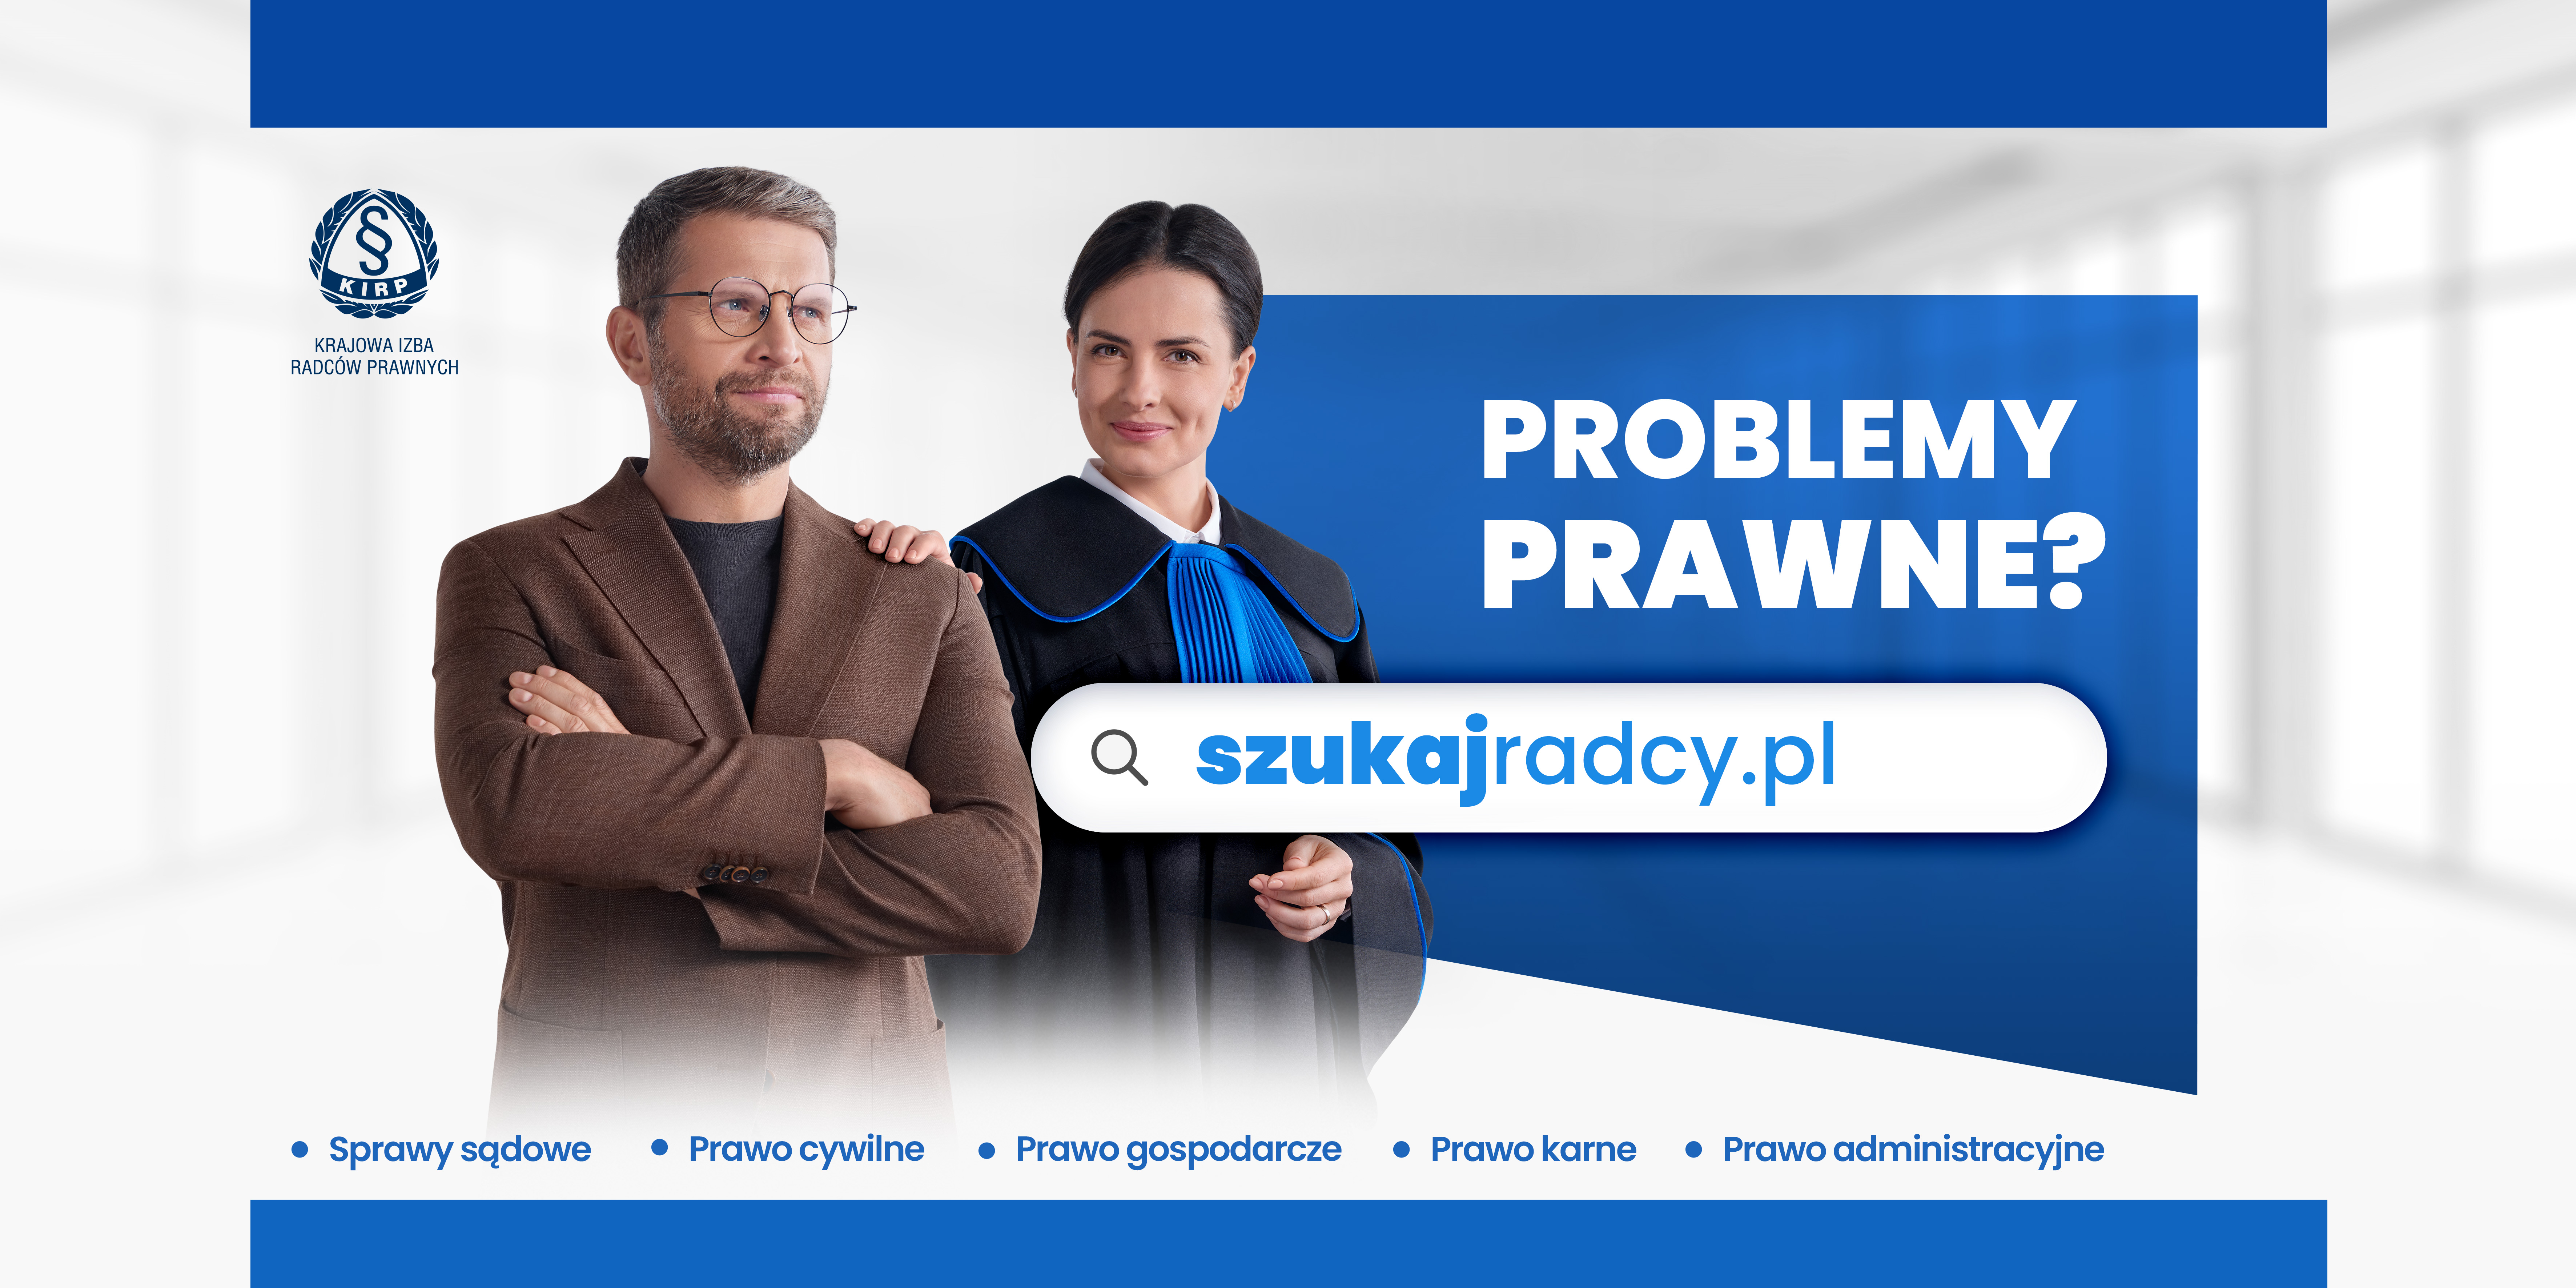 Krajowa Izba Radców Prawnych - Wyszukiwarka szukajradcy.pl